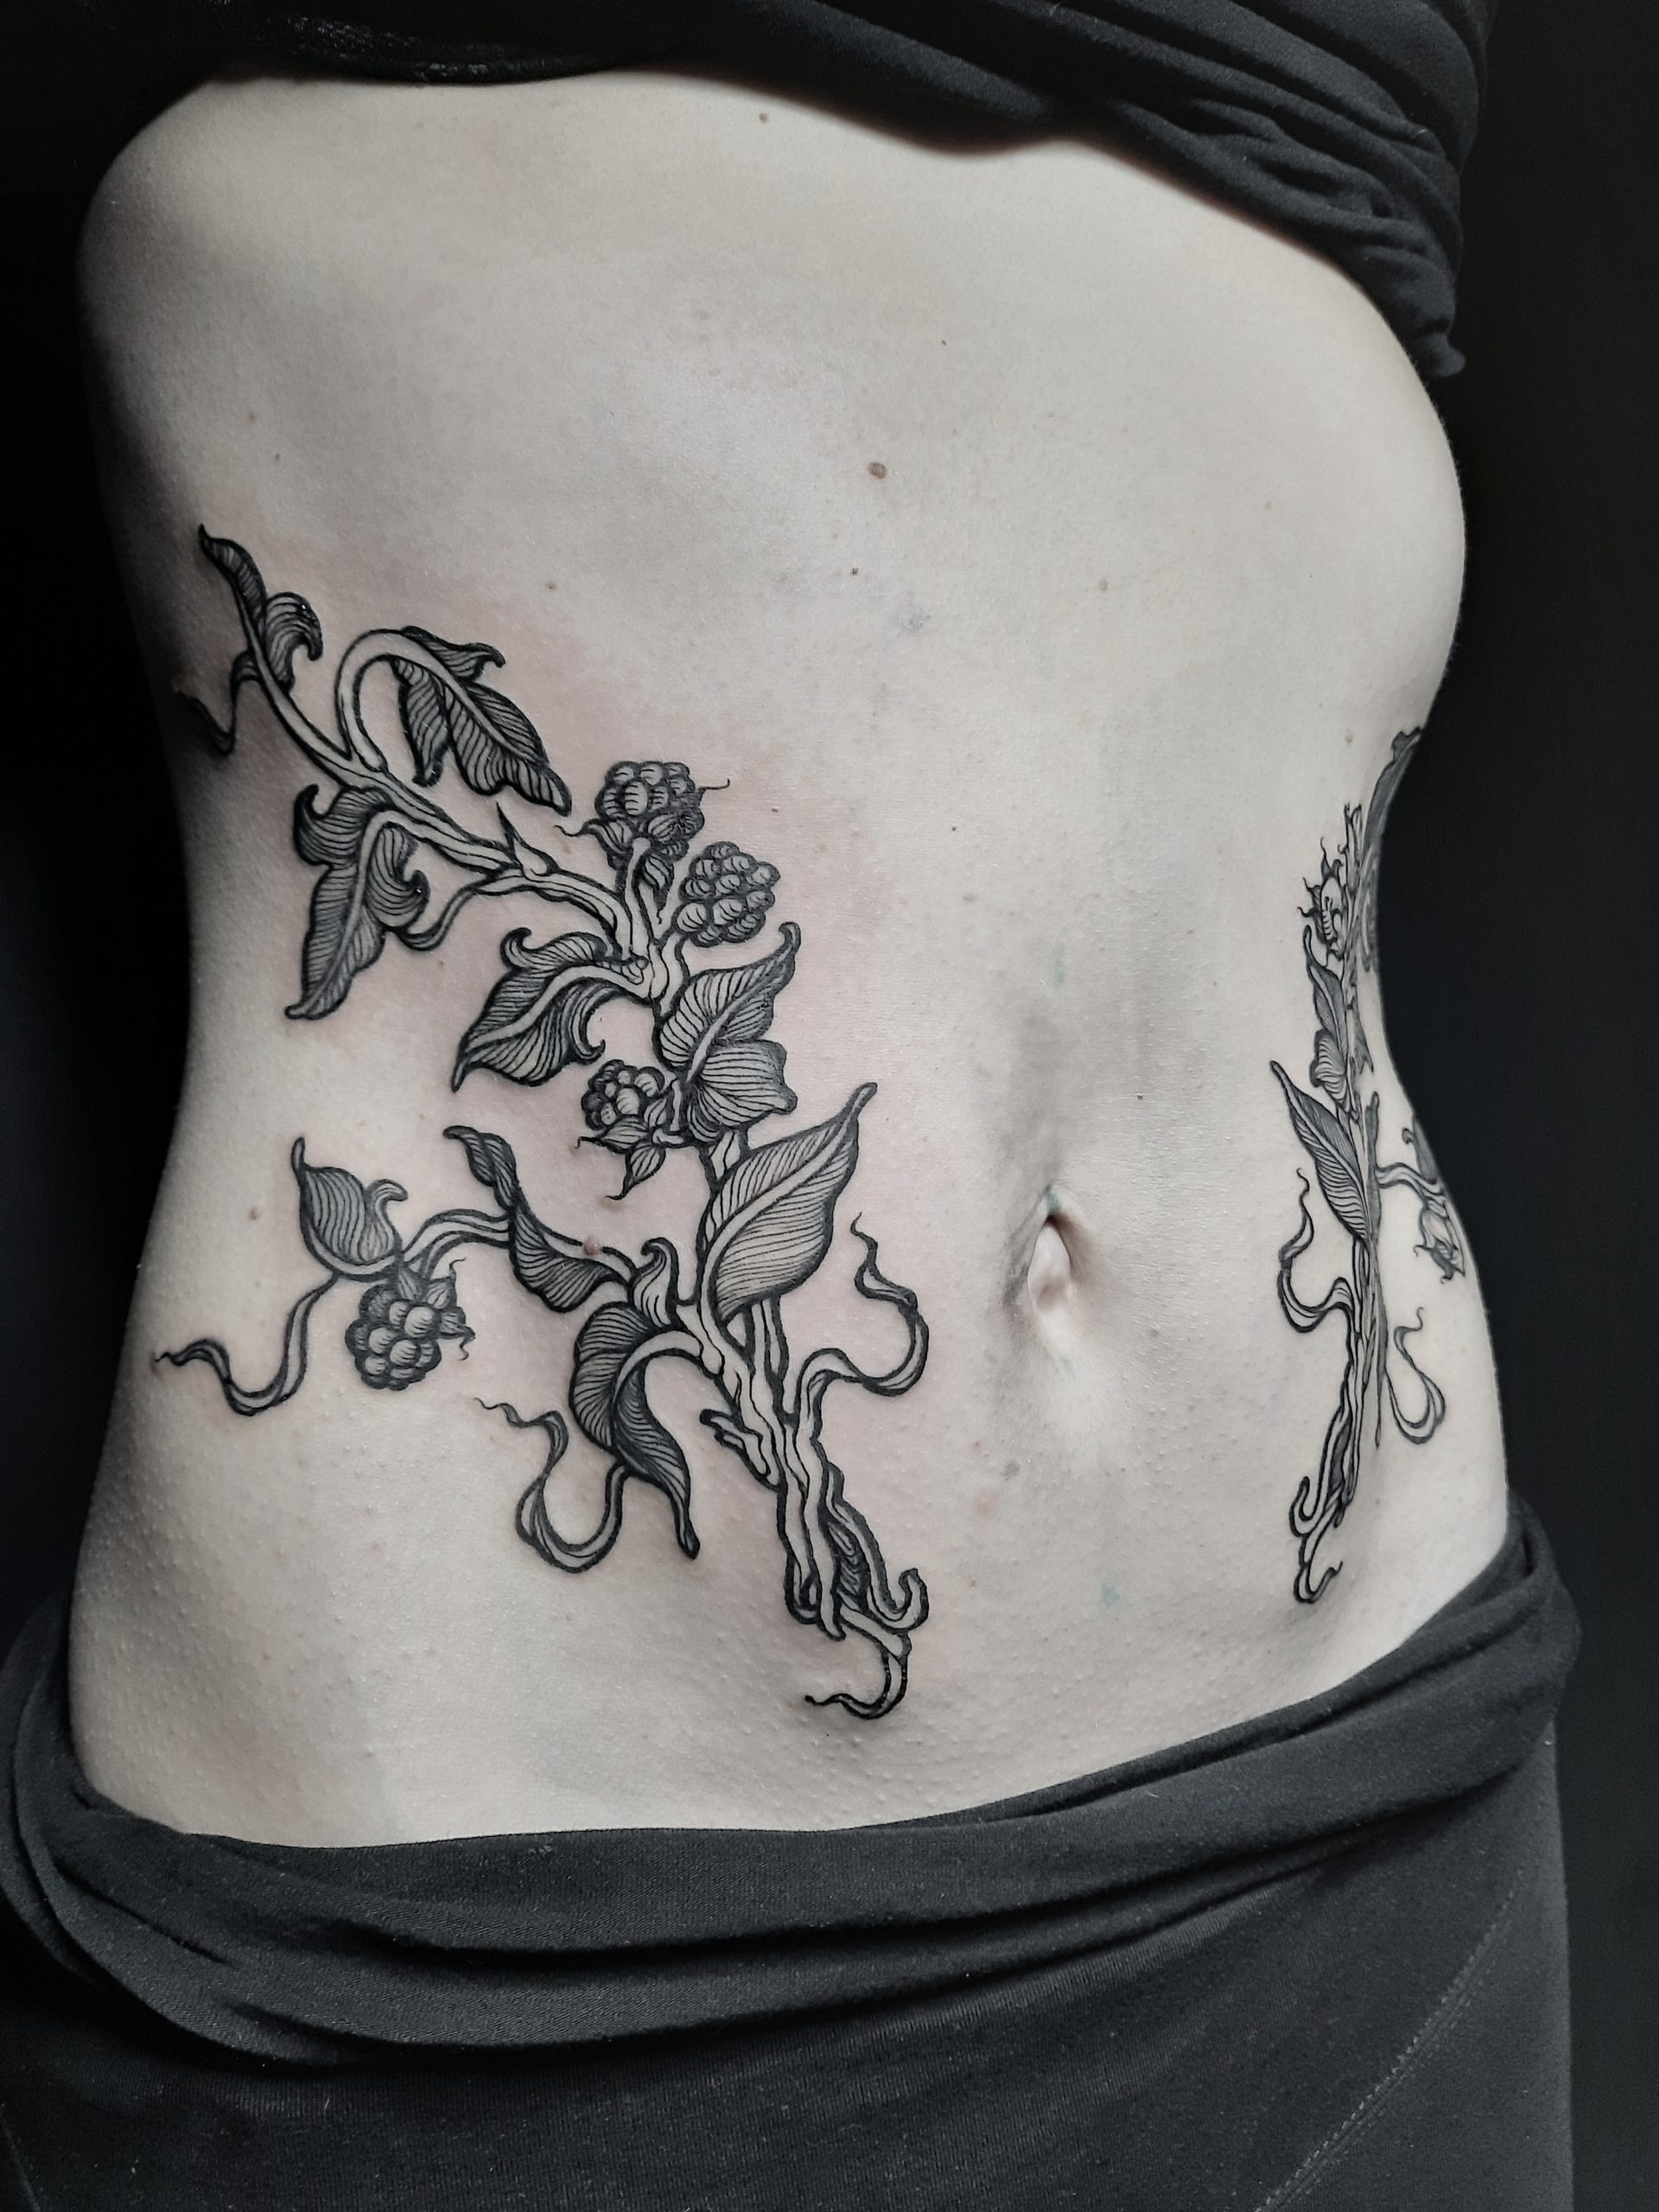 Stay True tattoo by Uken on DeviantArt